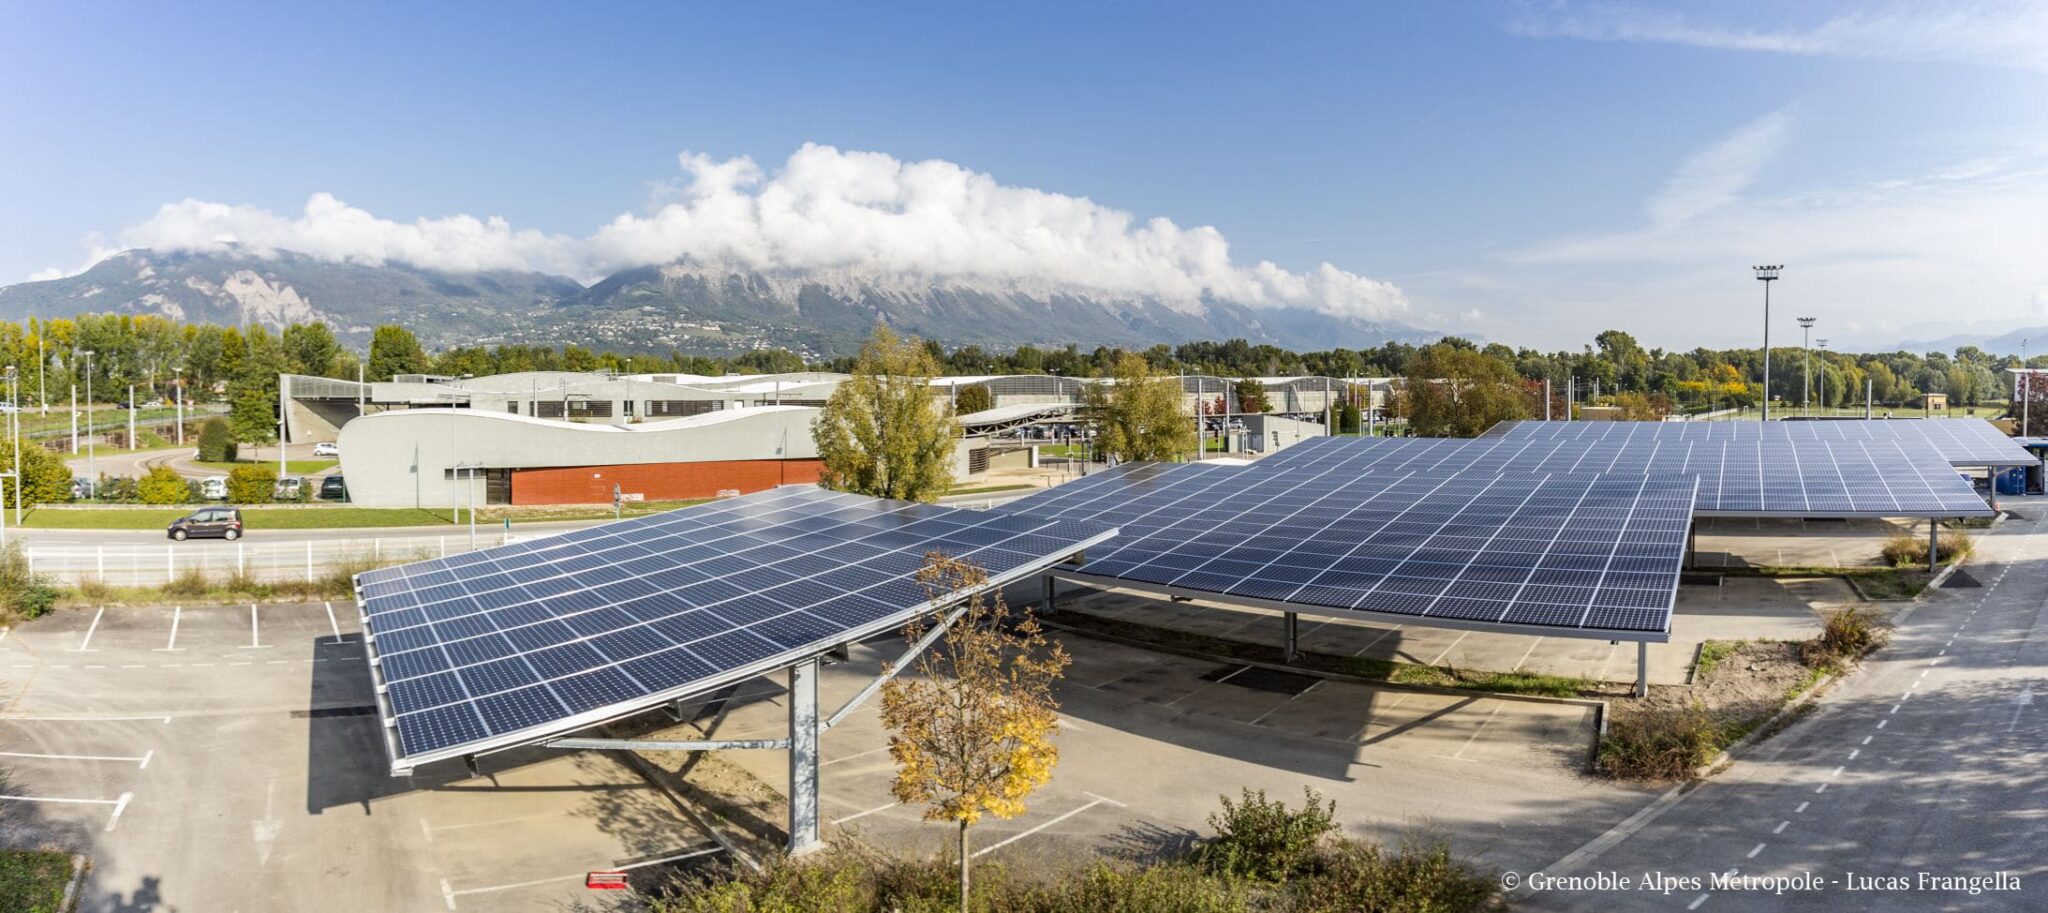 La Banque Populaire Auvergne Rhône Alpes crée la Banque de la Transition Énergétique pour proposer une épargne verte favorisant les circuits courts du financement de projets éco-responsables